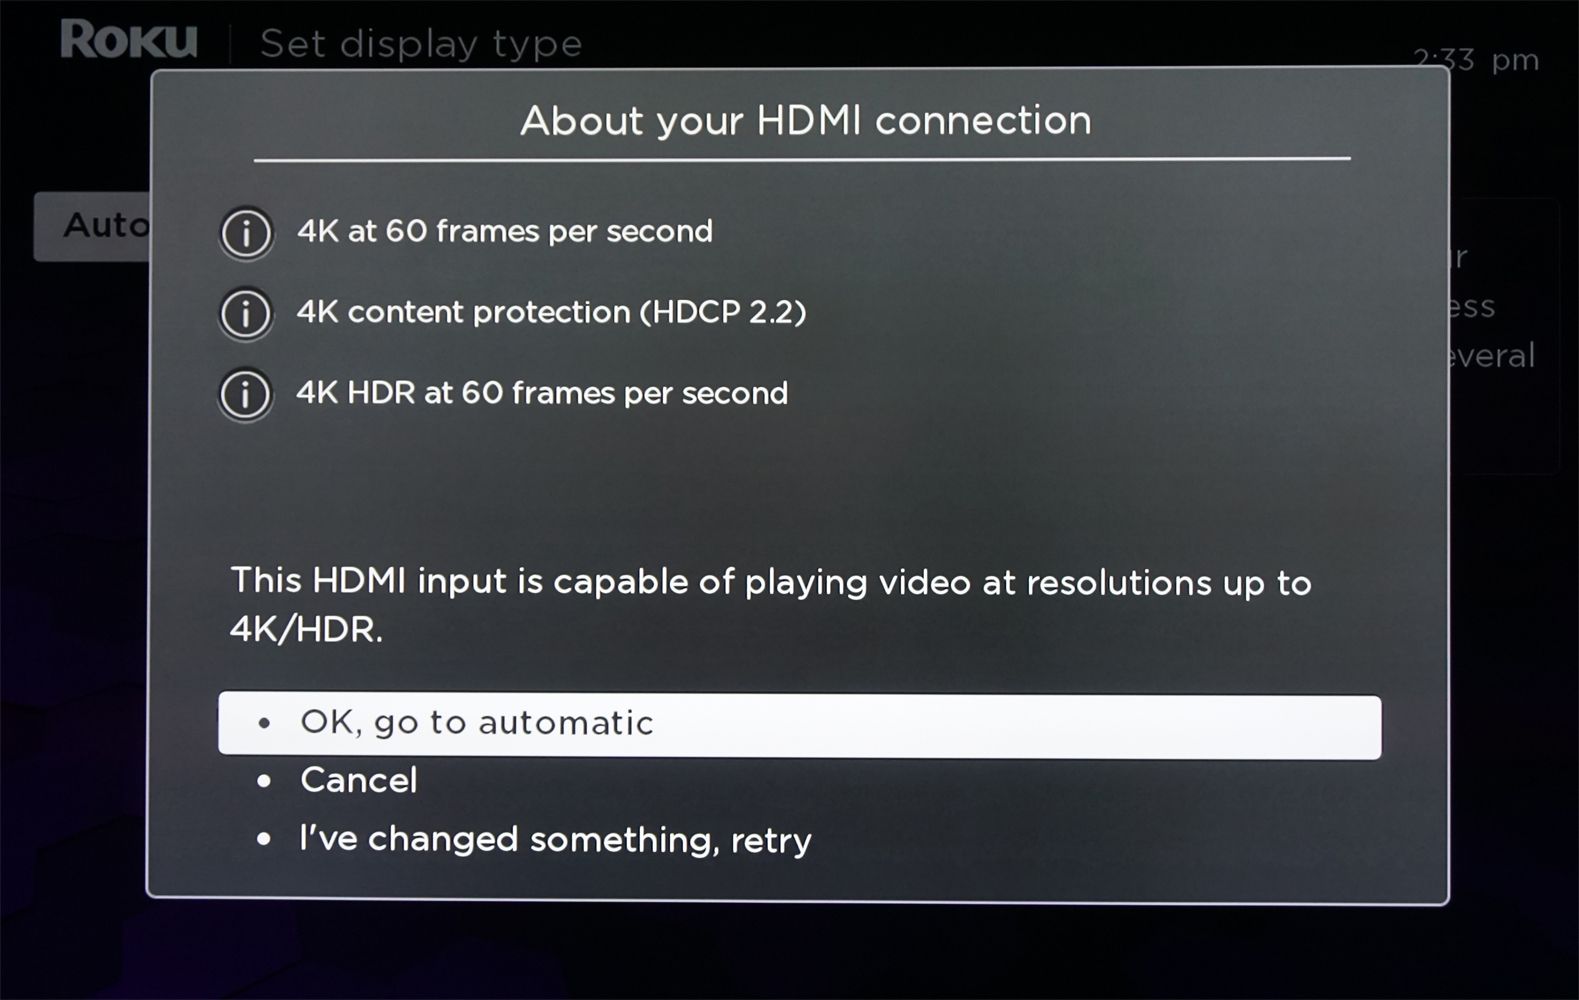 Roku Soundbar - Analyse van HDMI-verbinding